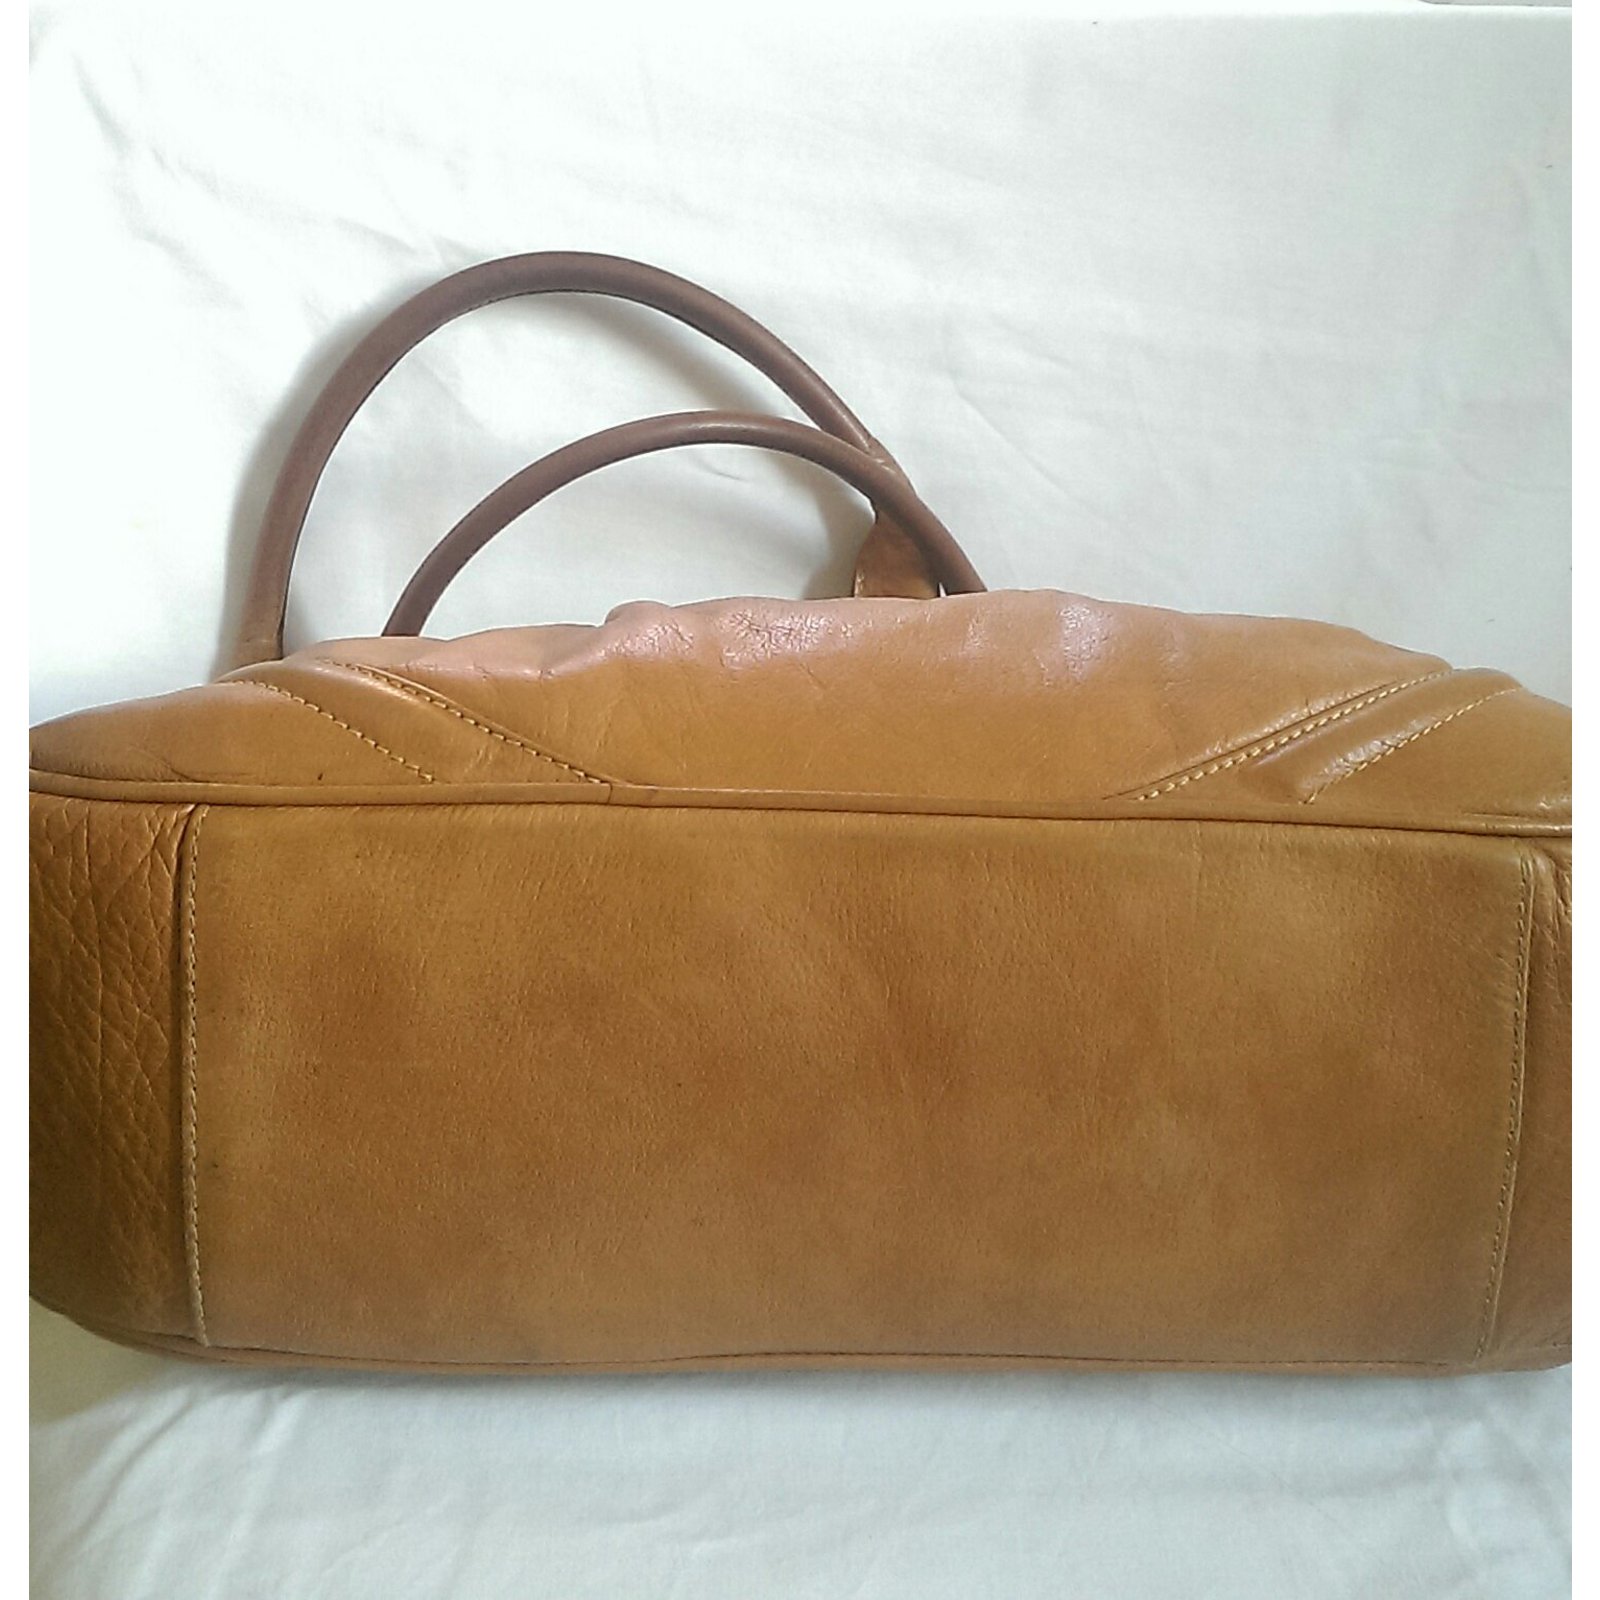 Leather handbag Guy Laroche Beige in Leather - 31357790